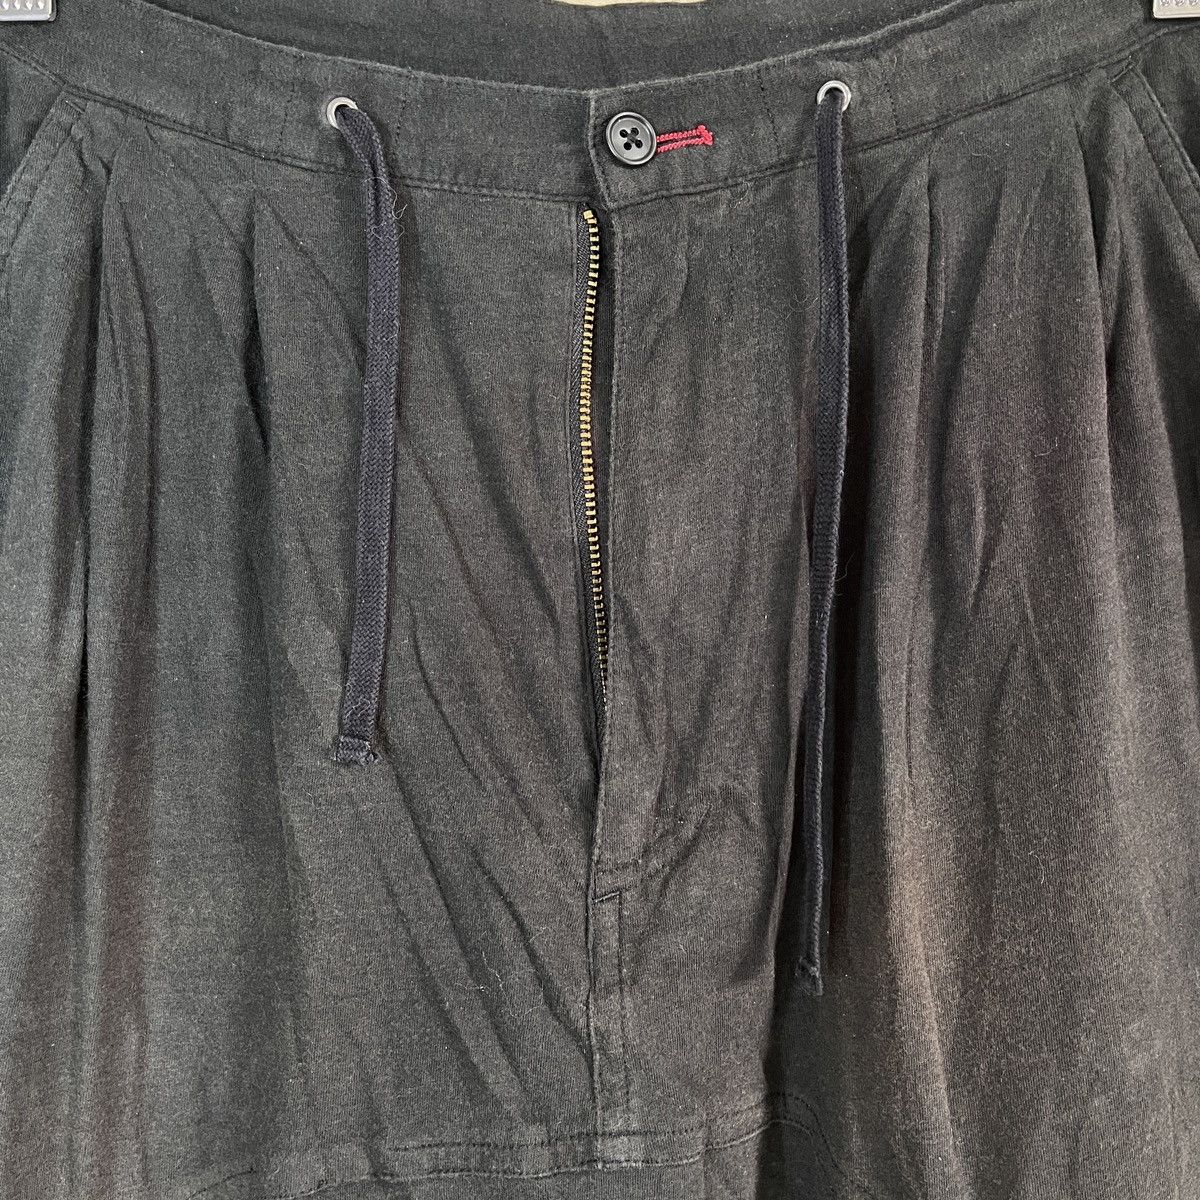 Stylo PPFM Long Short Pants Vintage - 11